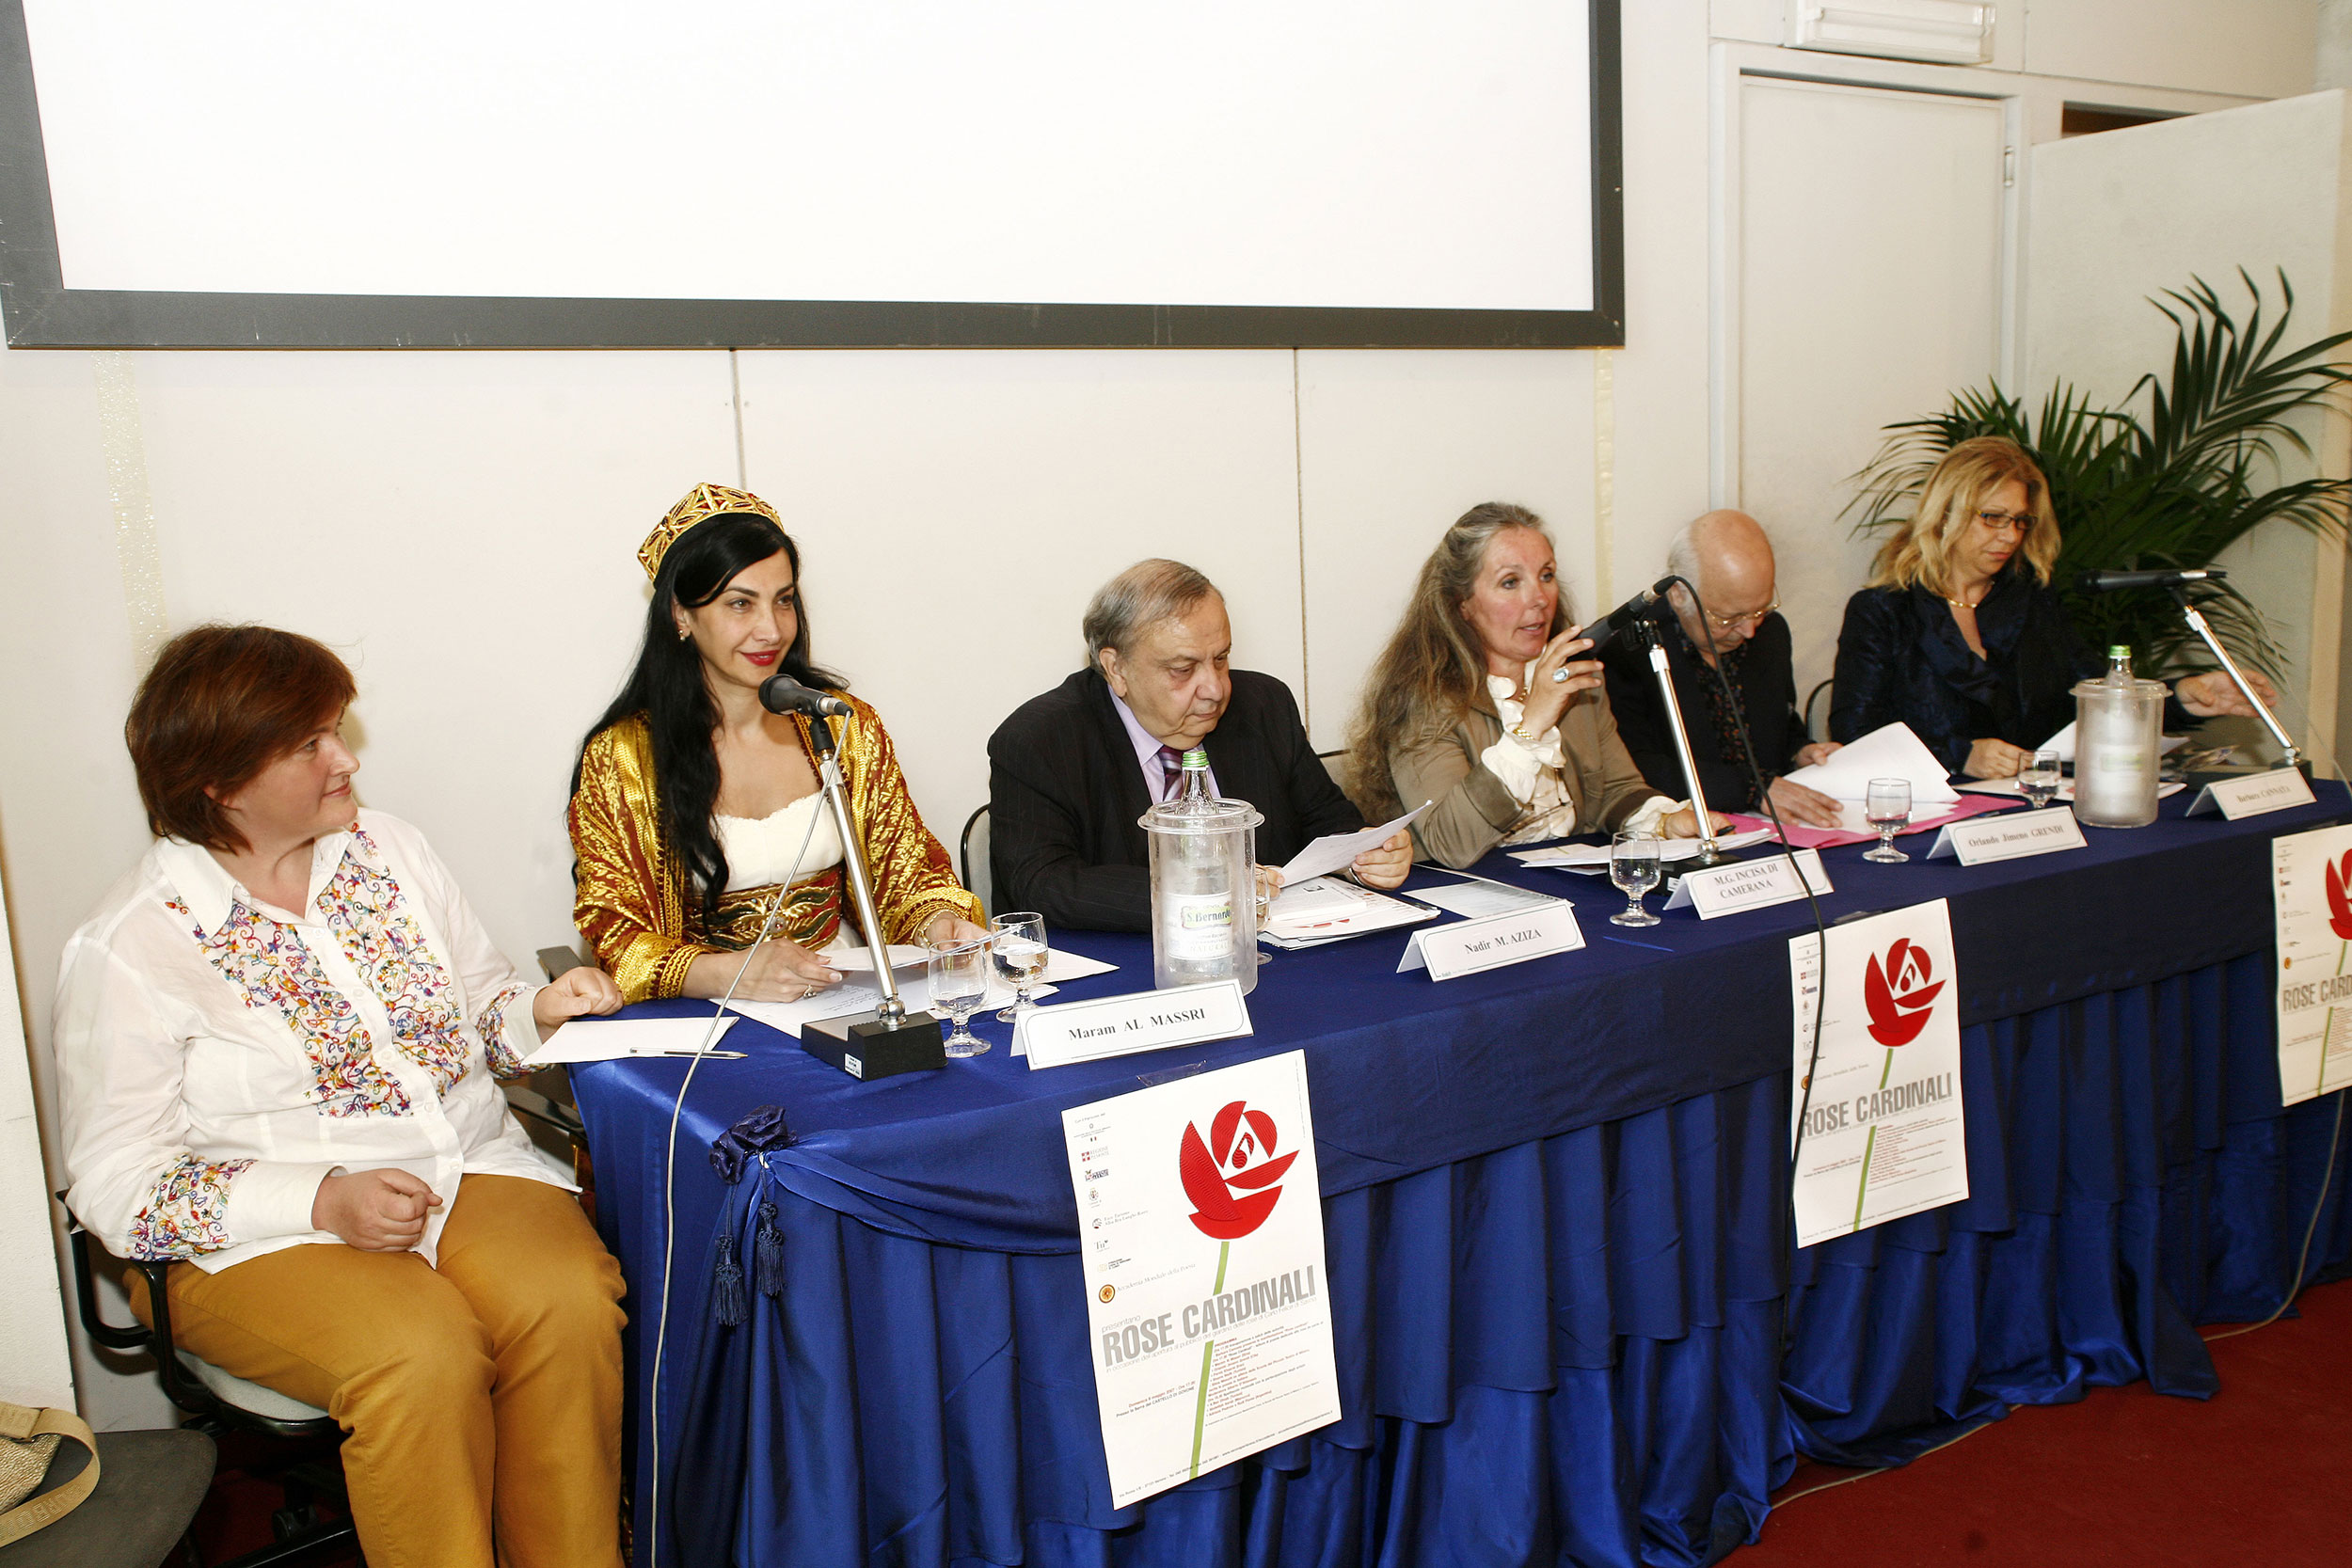 Partecipanti Rose Cardinali Al centro Nadir M. Aziza, a sinistra Maram Al Massri, a destra il poeta Orlando Jimeno Grendi (Cile)